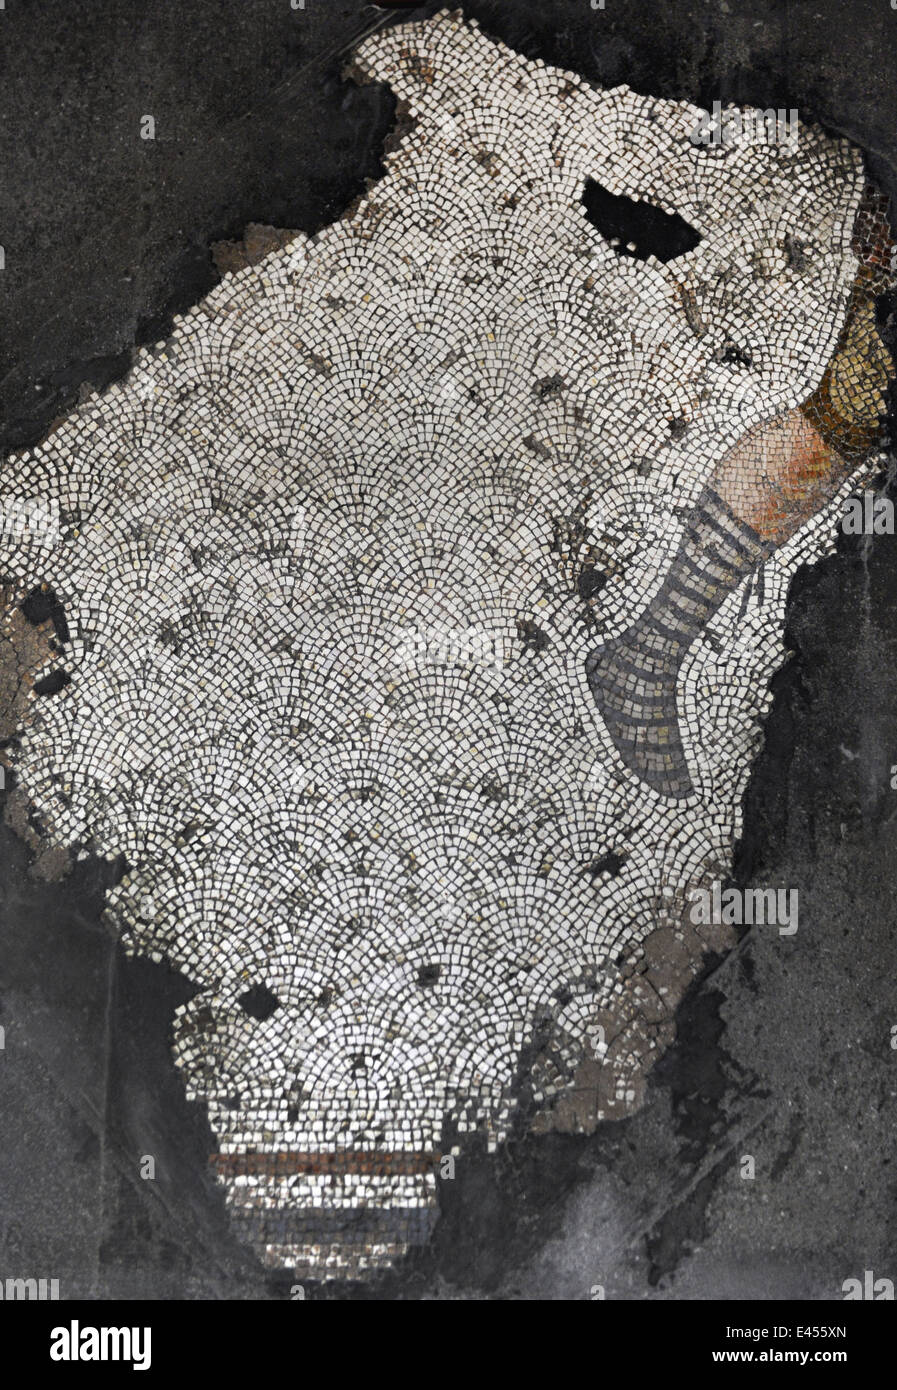 Großer Palast Mosaik-Museum. 4.-6. Jahrhunderte. Detail eines Mosaiks Darstellung ein Bein eines Jägers. Istanbul. Turkei. Stockfoto